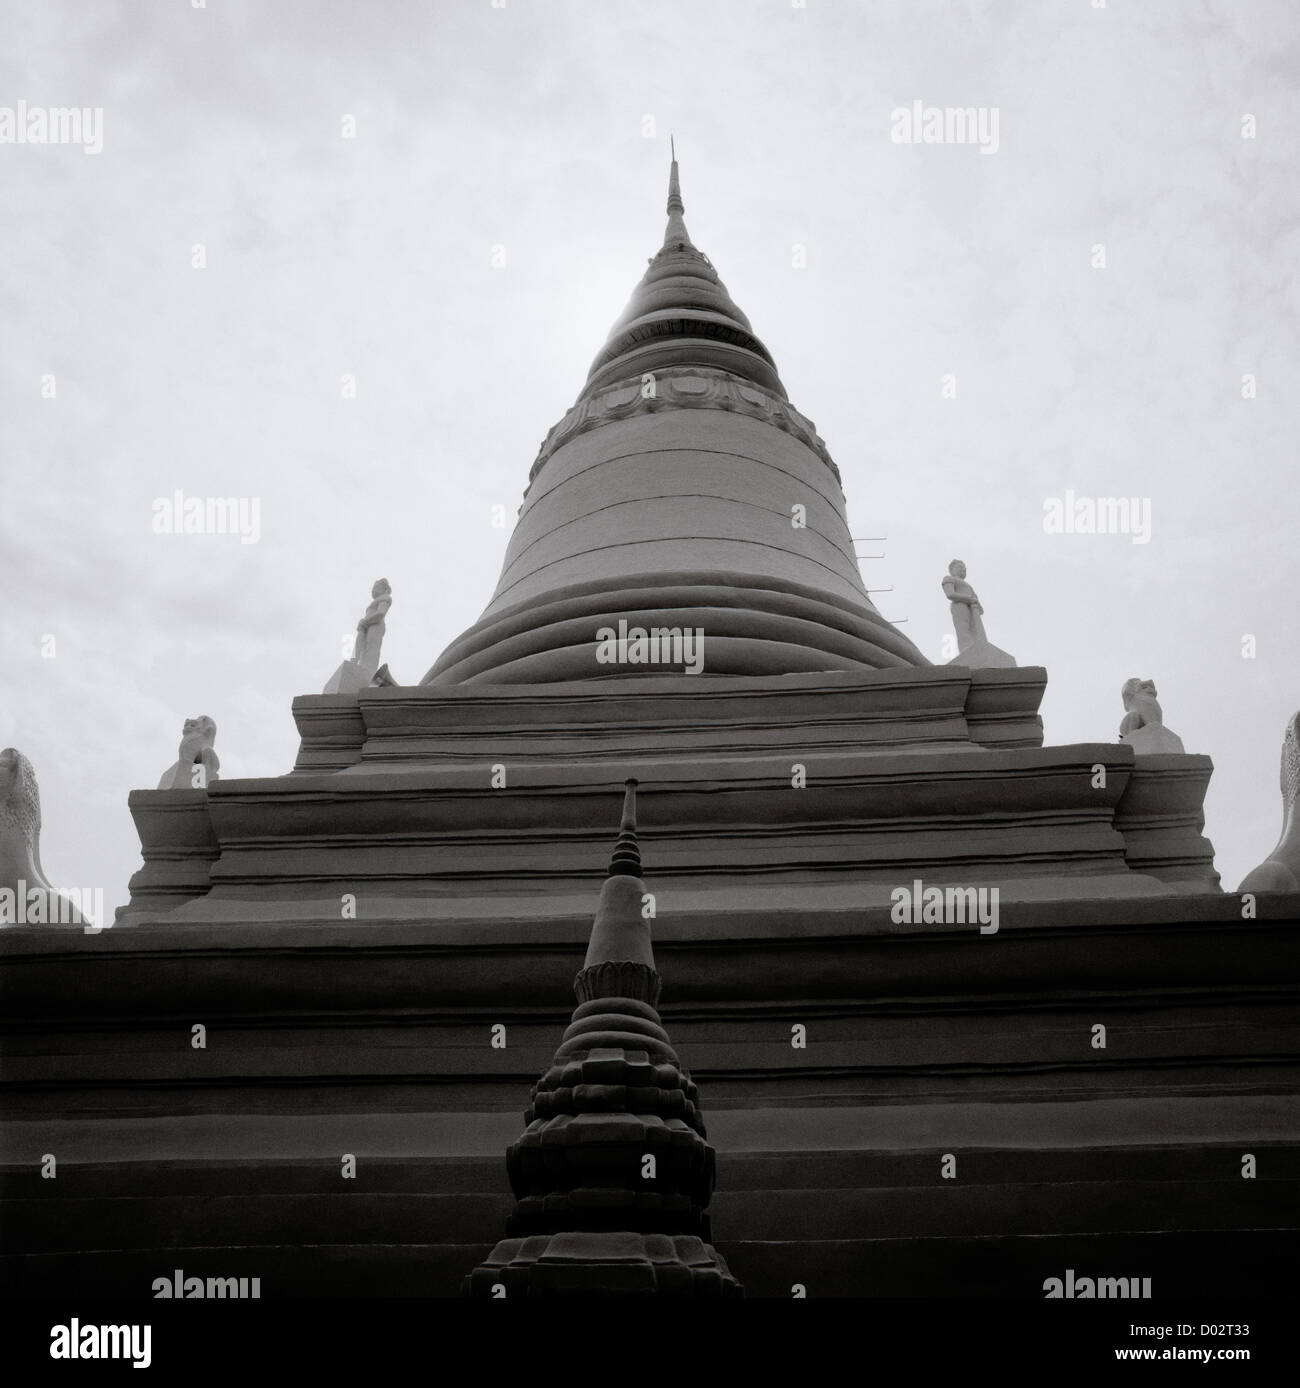 Wat Phnom Buddhistentempel in Phnom Penh in Kambodscha in Fernost-Südost-Asien. Buddhismus Religion religiöse Architektur Gebäude ätherischen Reisen Stockfoto